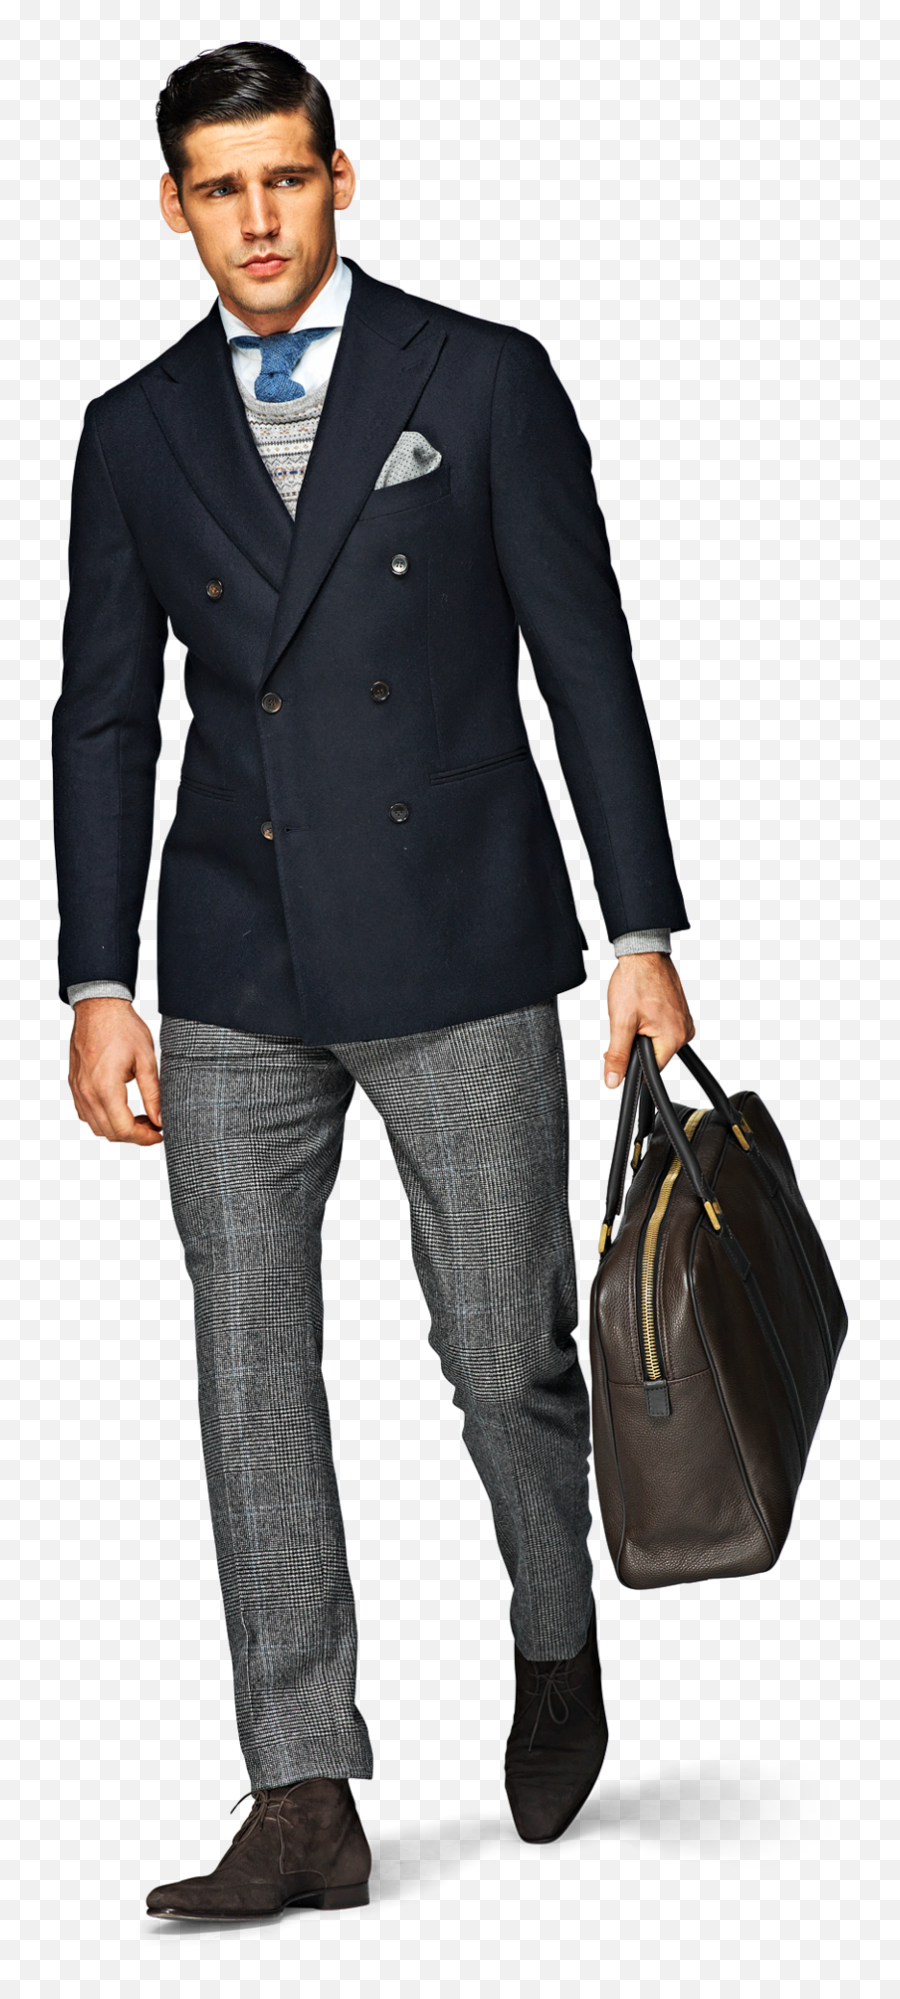 Man Png Transparent Manpng Images Pluspng - Man Walking In Suit Png,Suit Transparent Background